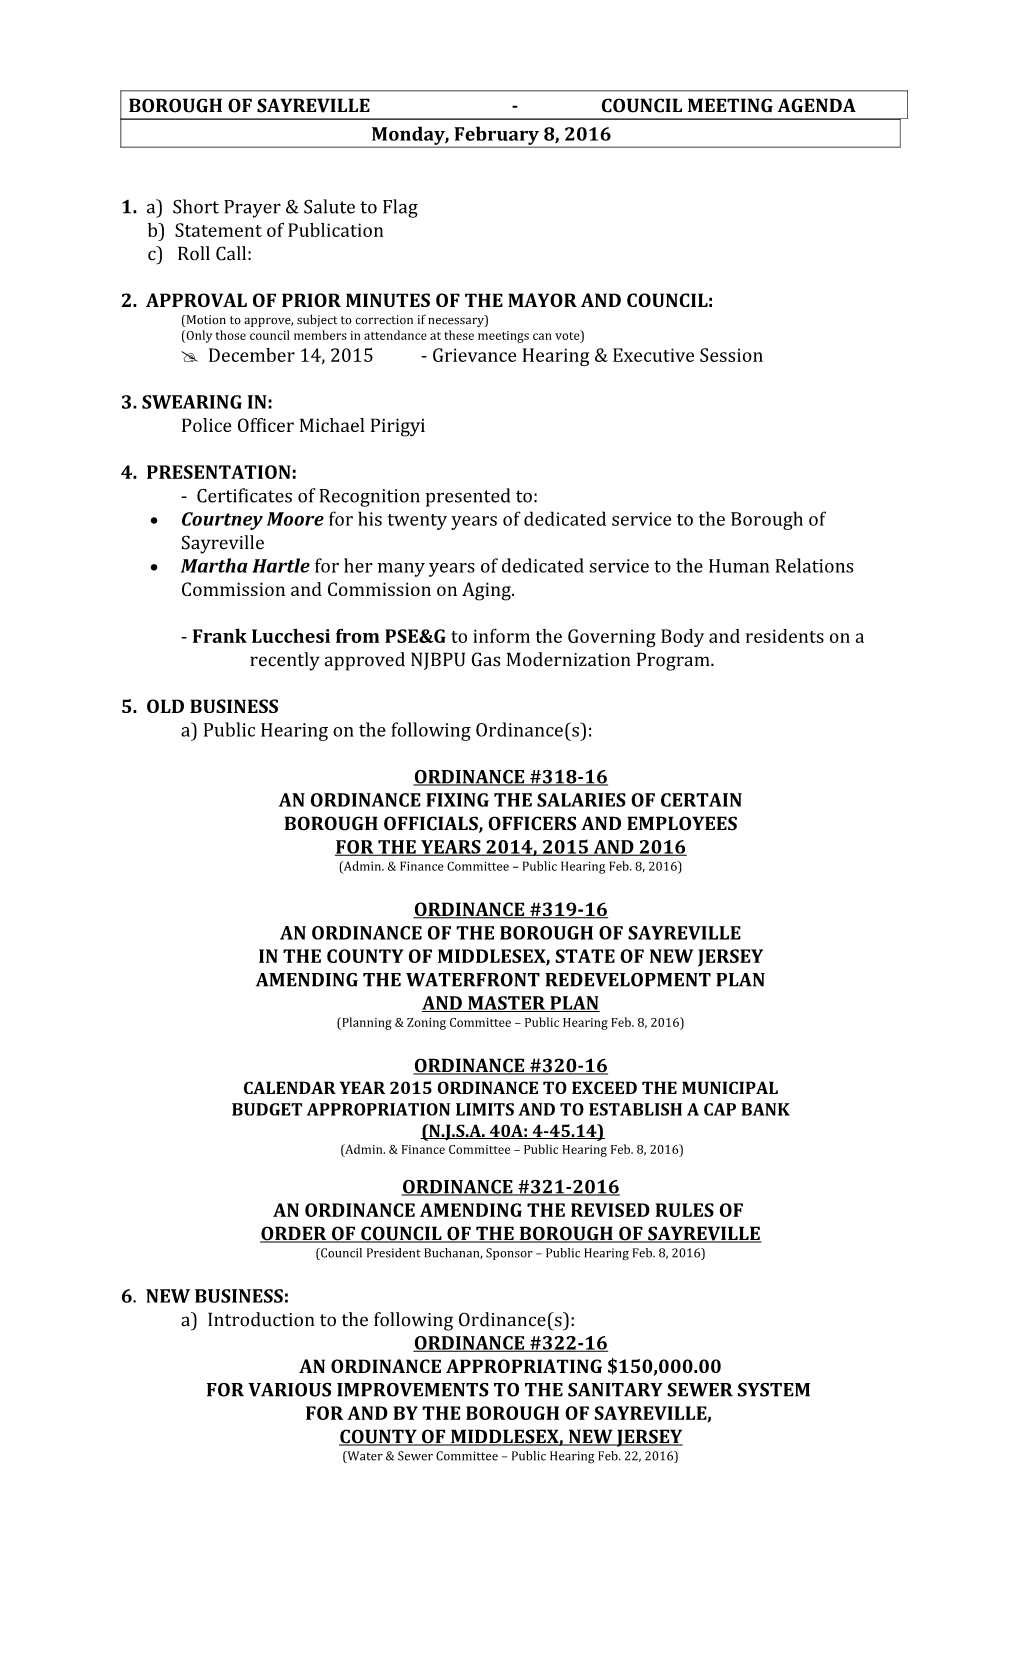 Borough of Sayreville - Council Meeting Agenda